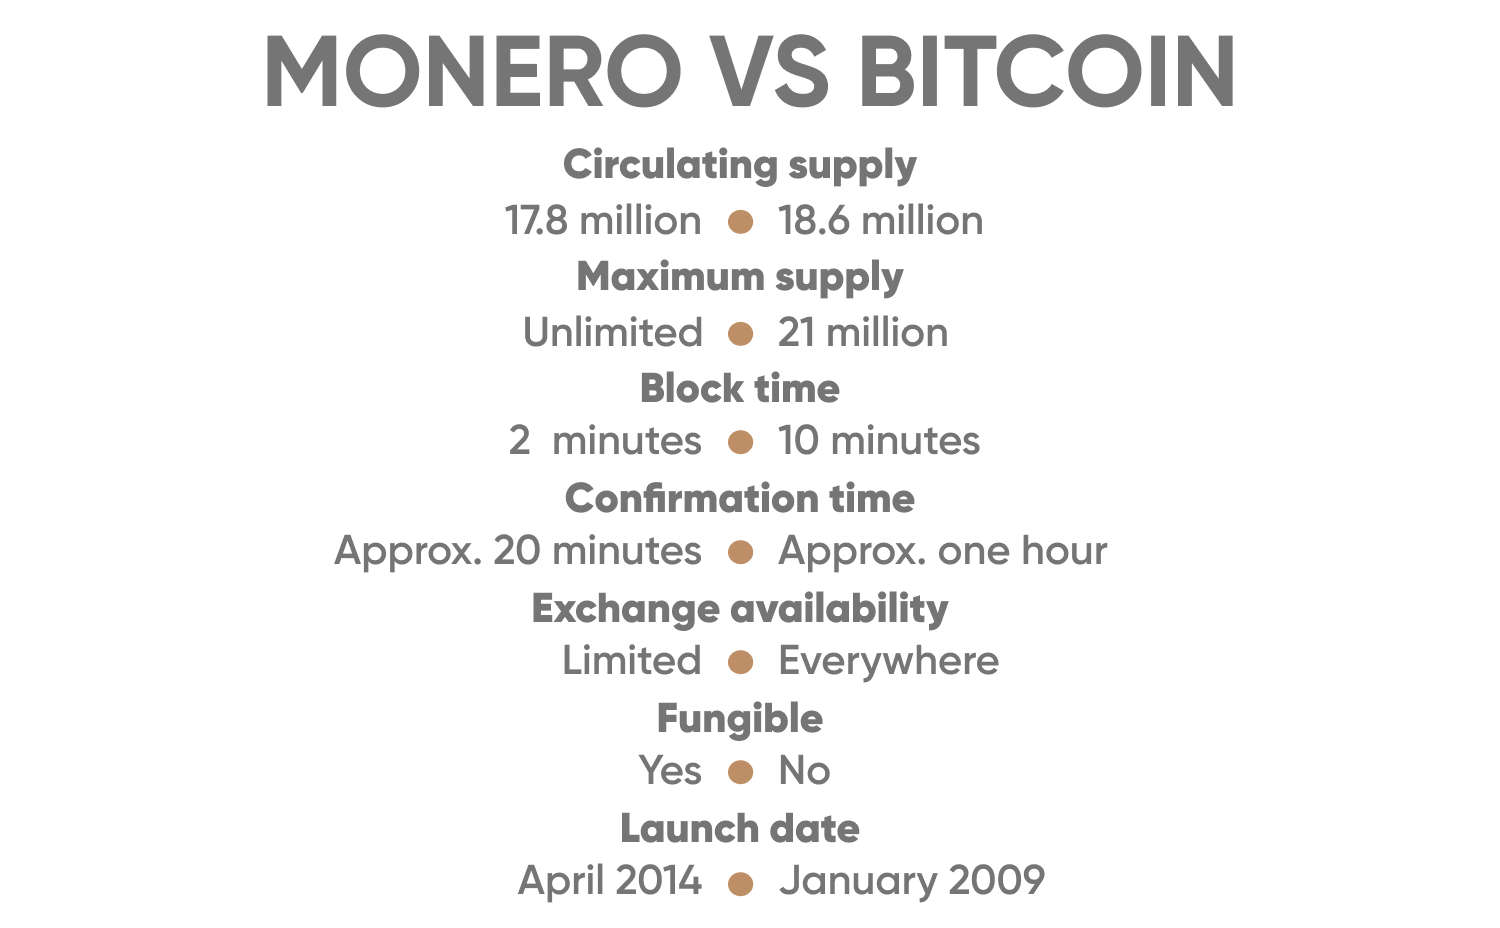 Monero (XMR) price